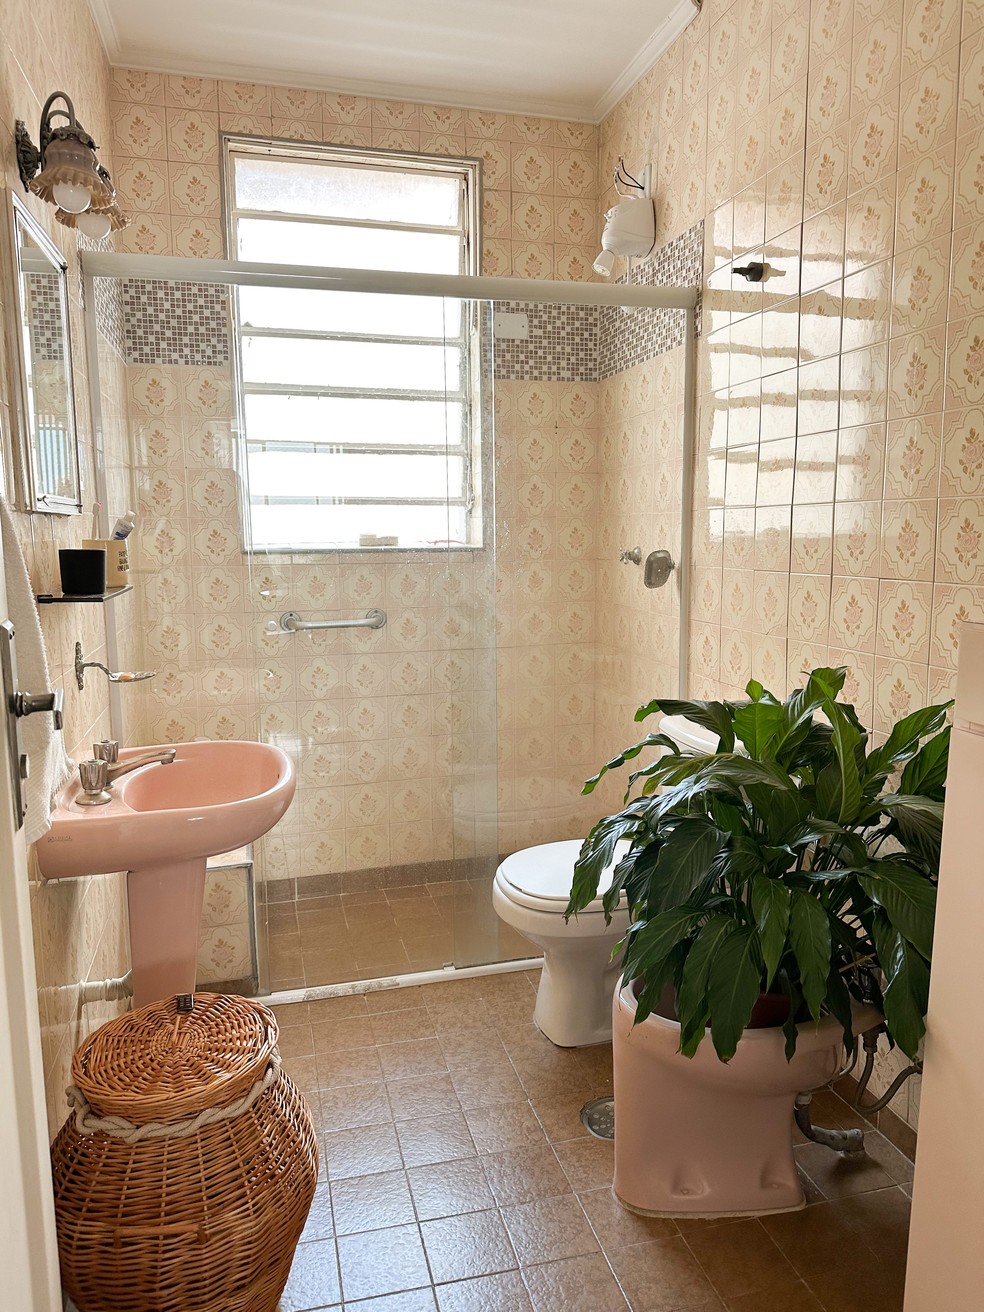 O banheiro do apartamento também conta com azulejos florais  — Foto: Monique Forner 